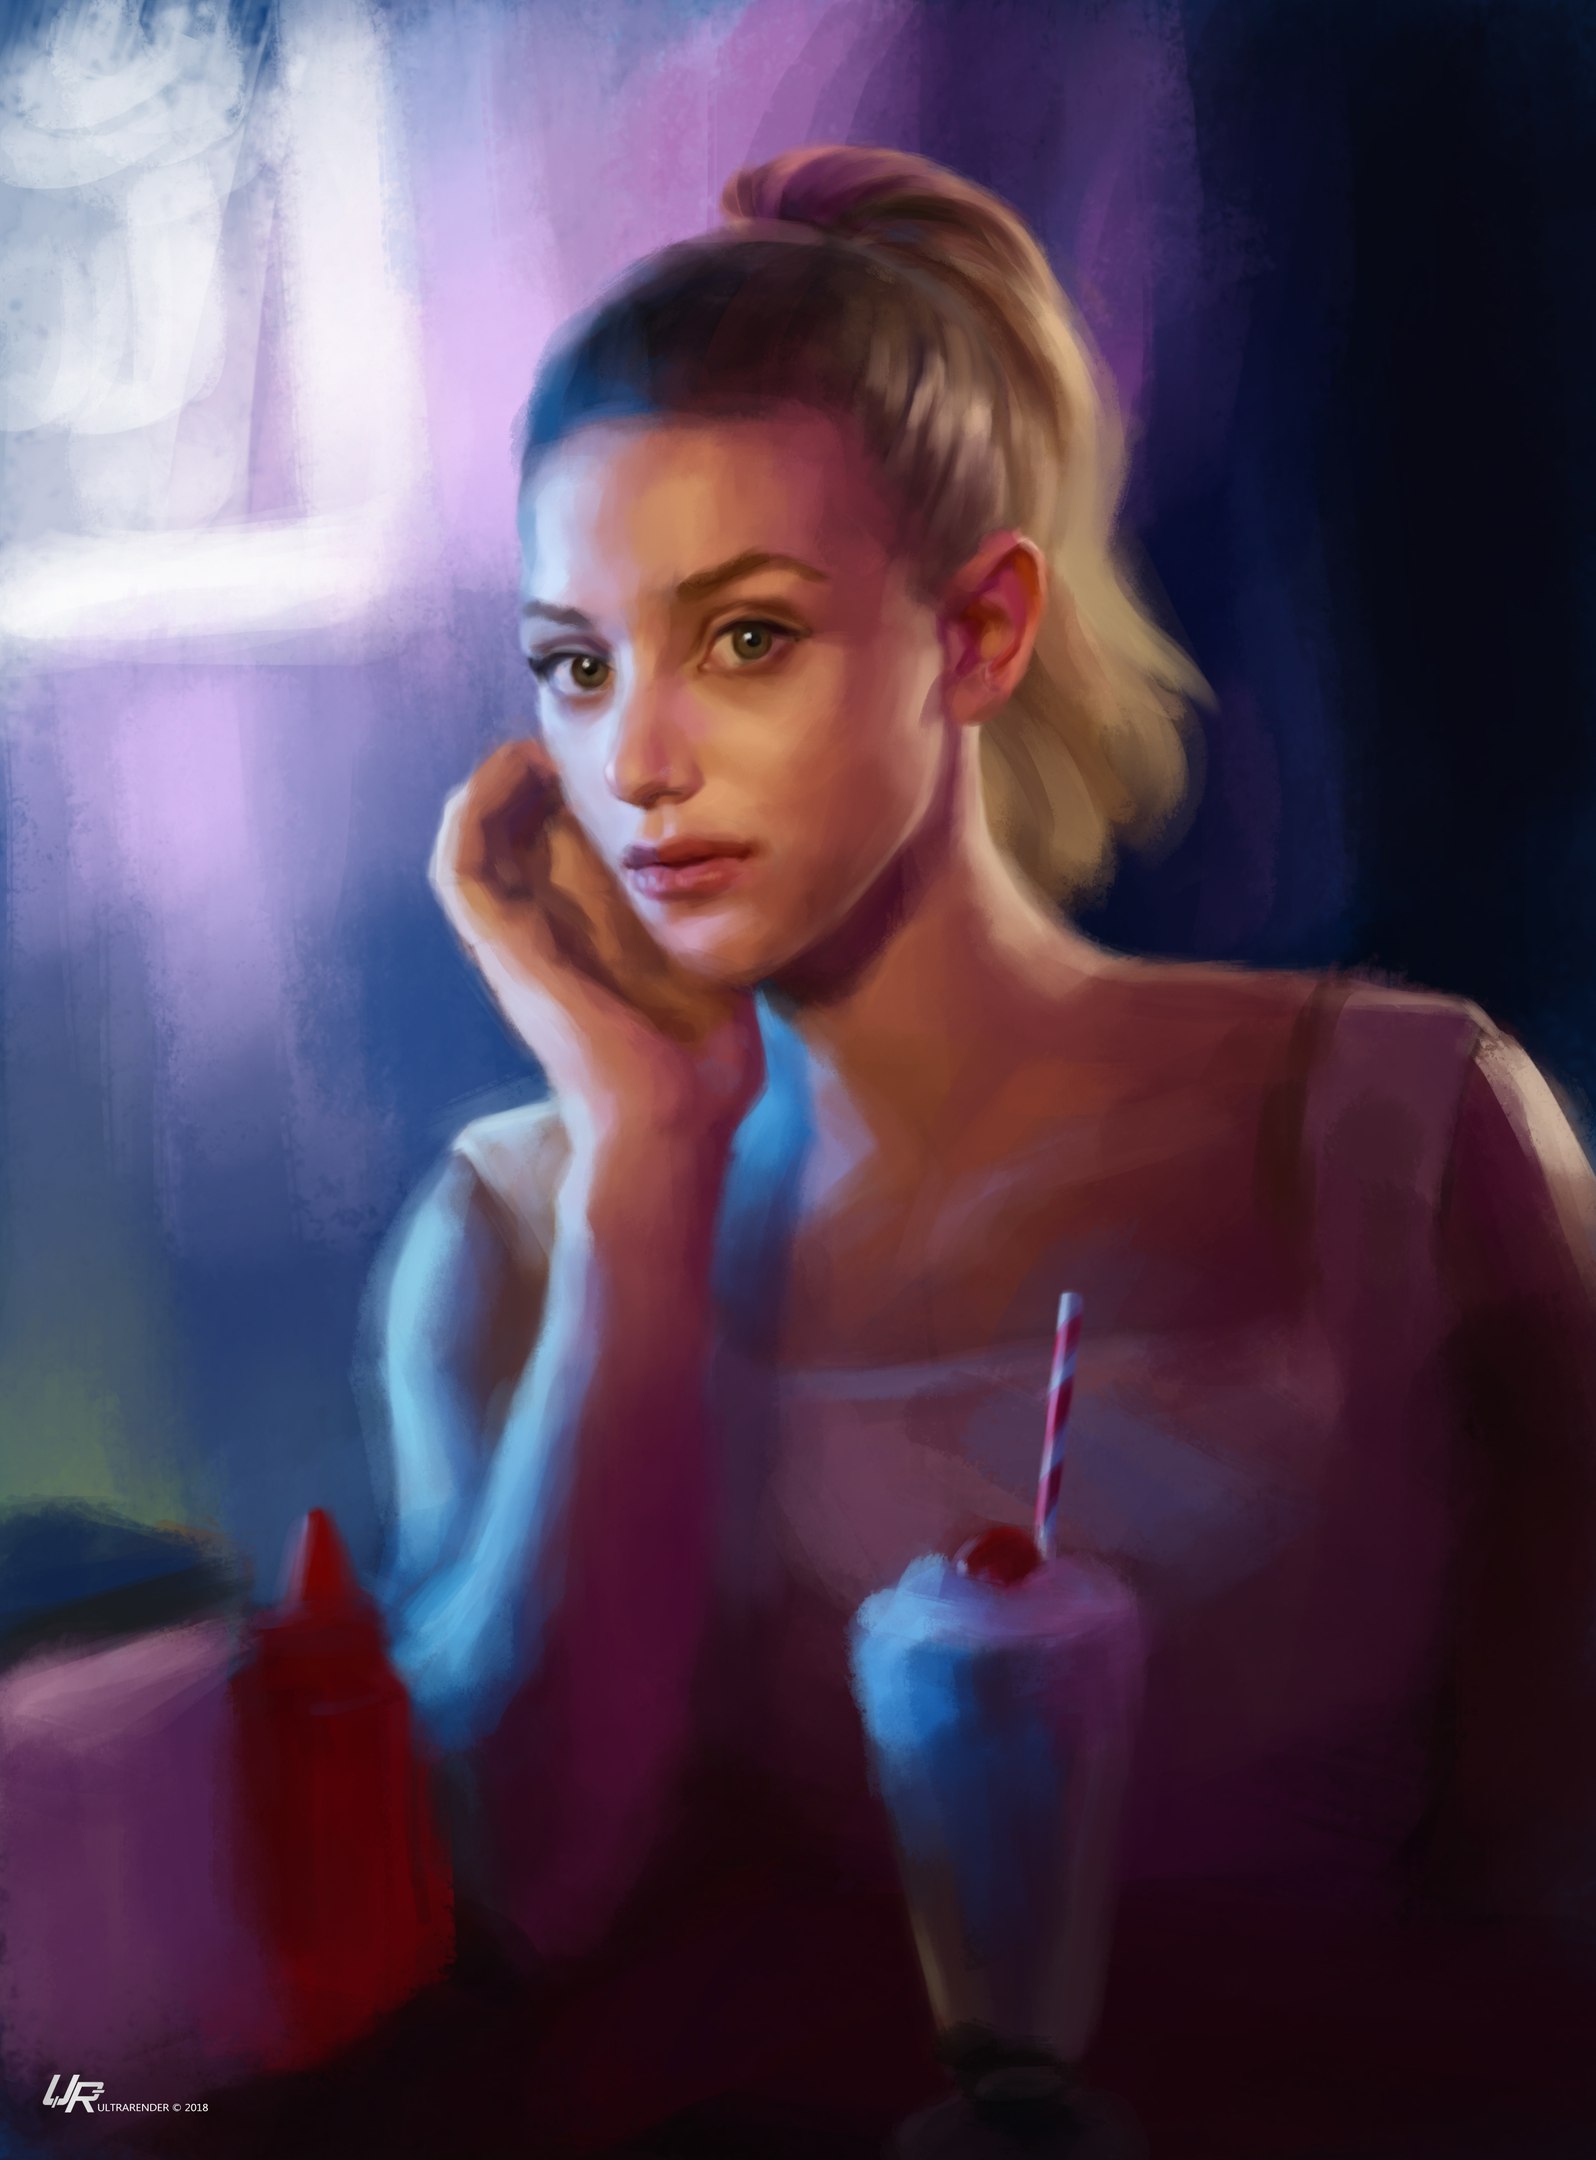 Girl in cafe